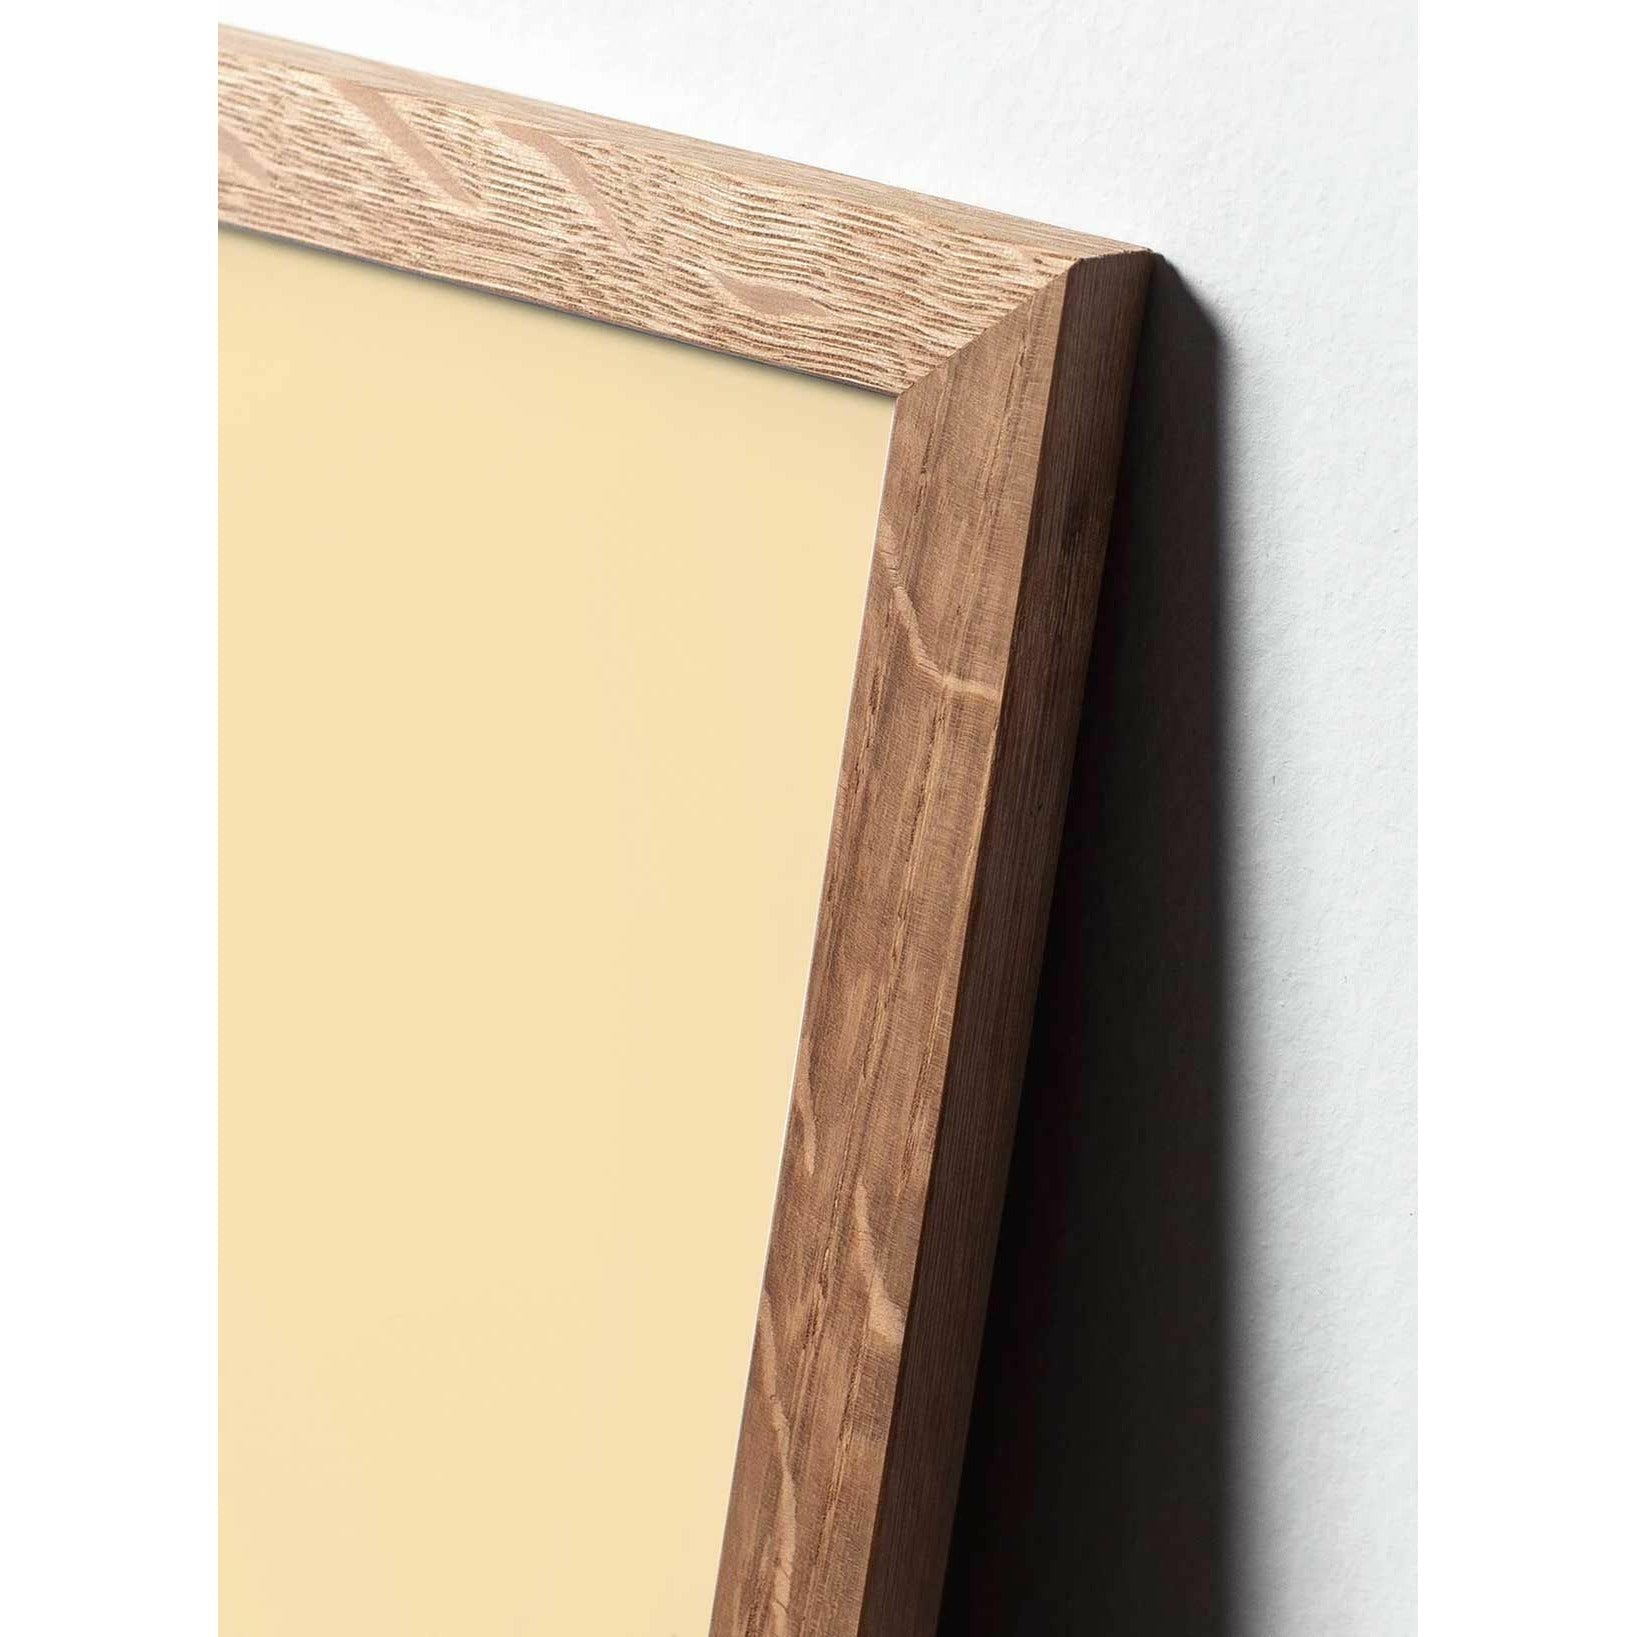 Brainchild Eierlijnposter, frame gemaakt van licht hout A5, blauwe achtergrond